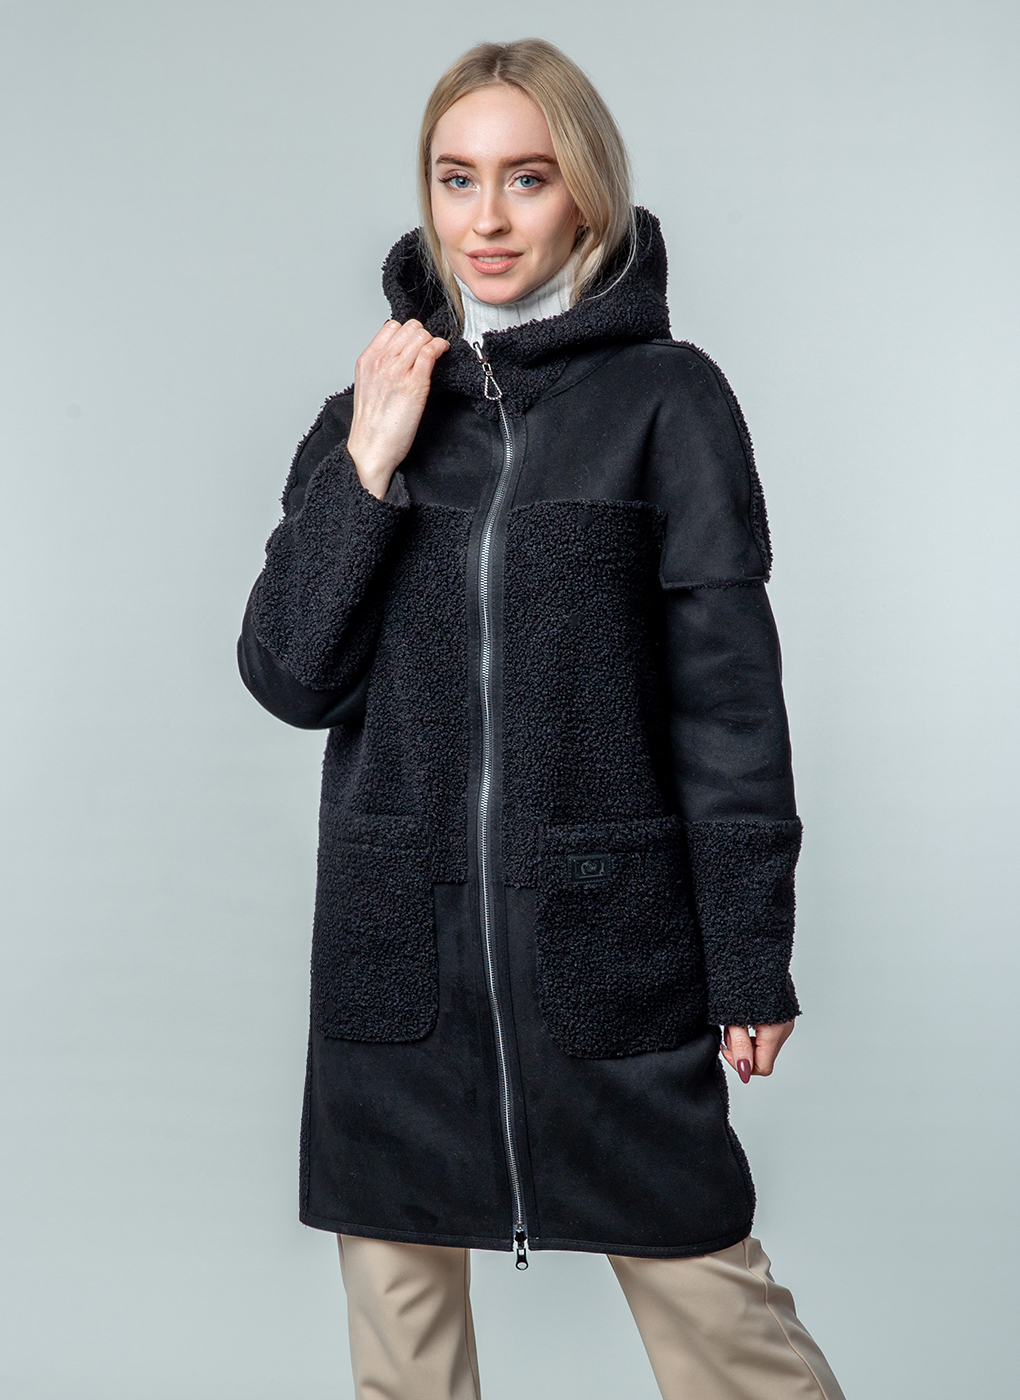 Пальто женское Каляев 59243 черное 48 RU